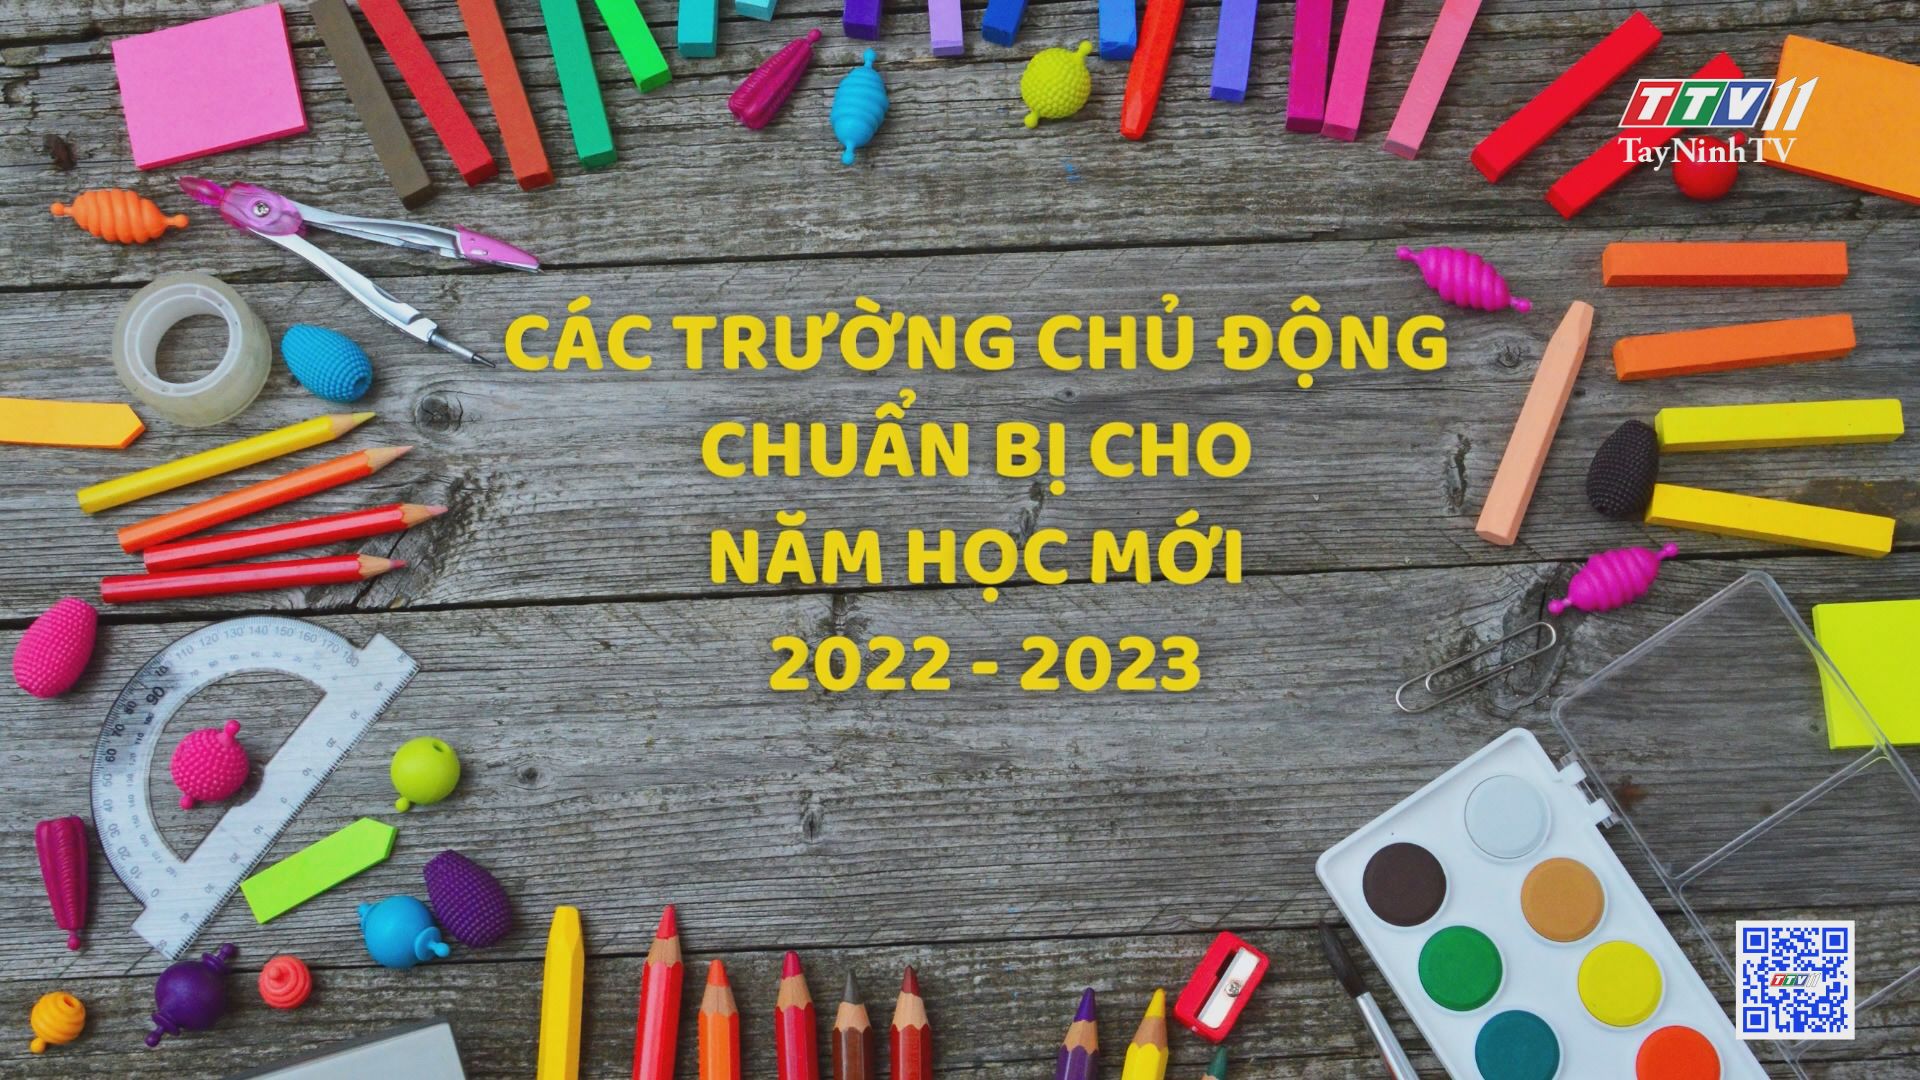 Các trường chủ động chuẩn bị cho năm học mới 2022 - 2023 | Giáo dục và đào tạo | TayNinhTV